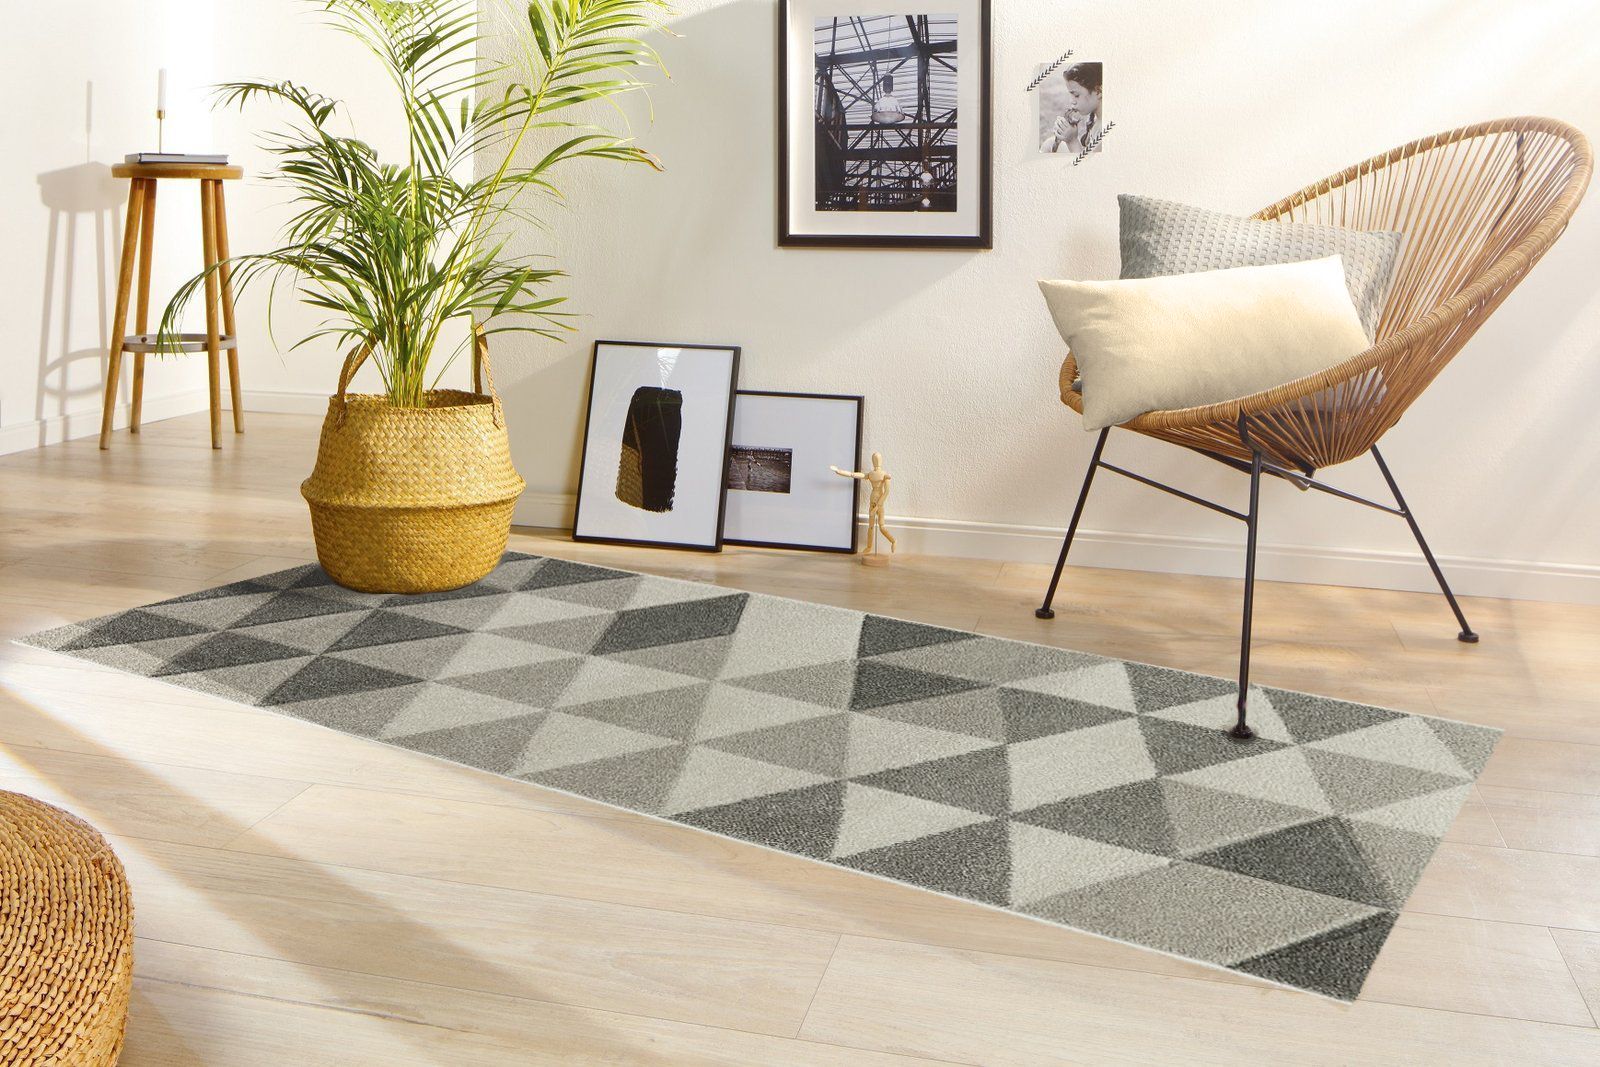 Chodnik dywanowy do salonu - praktyczne i stylowe rozwiązanie